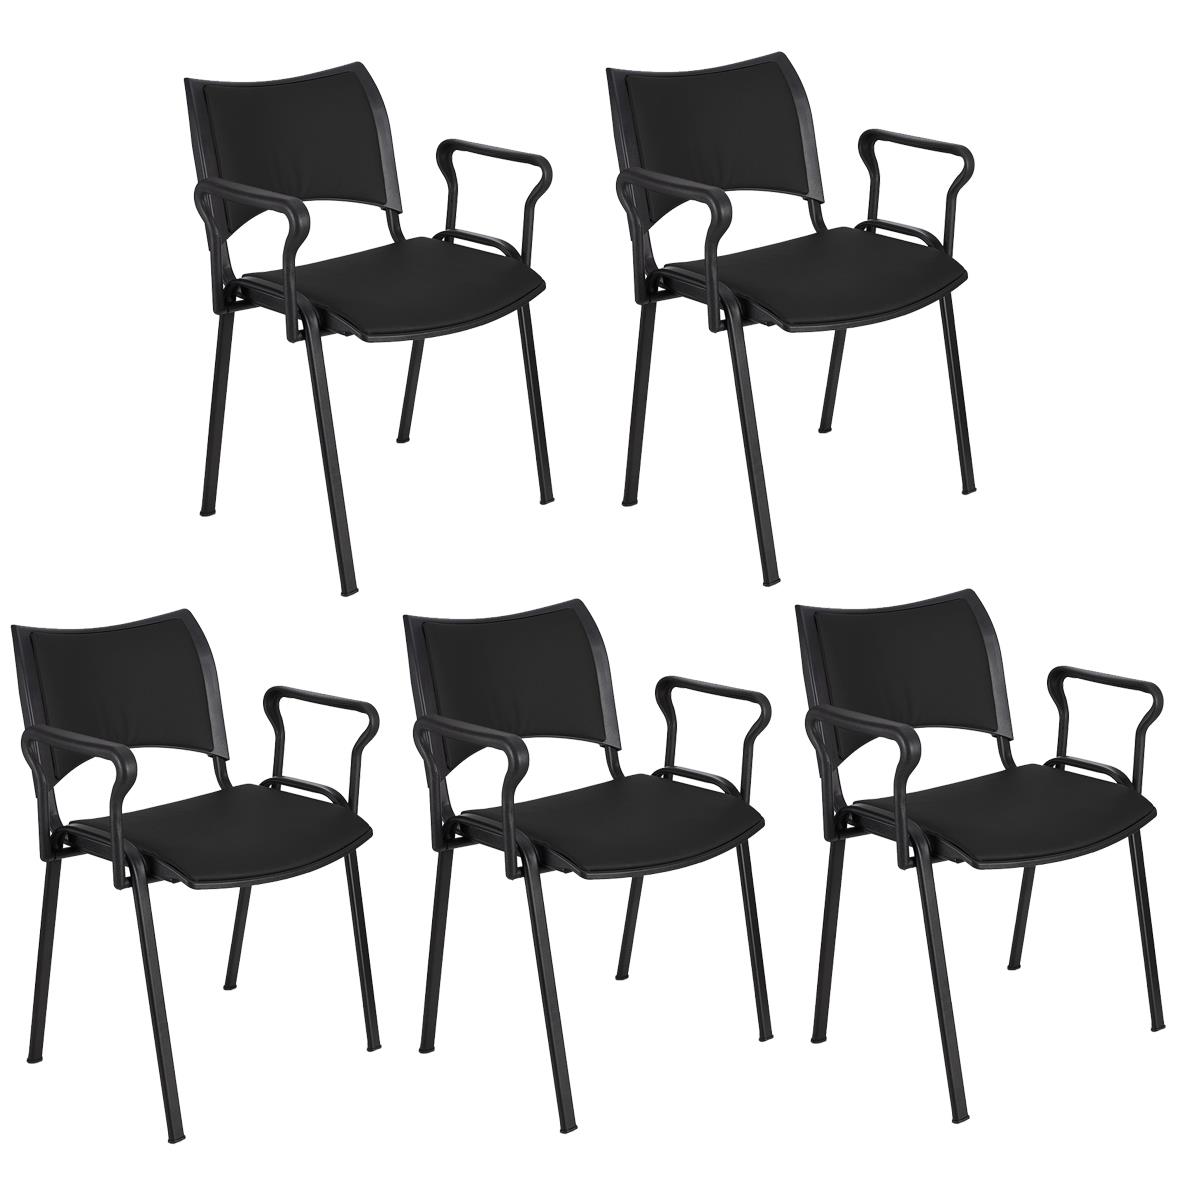 Lote 5 Cadeiras de Visita ROMEL PELE COM BRAÇOS, Empilhável, Pernas Pretas, Preto